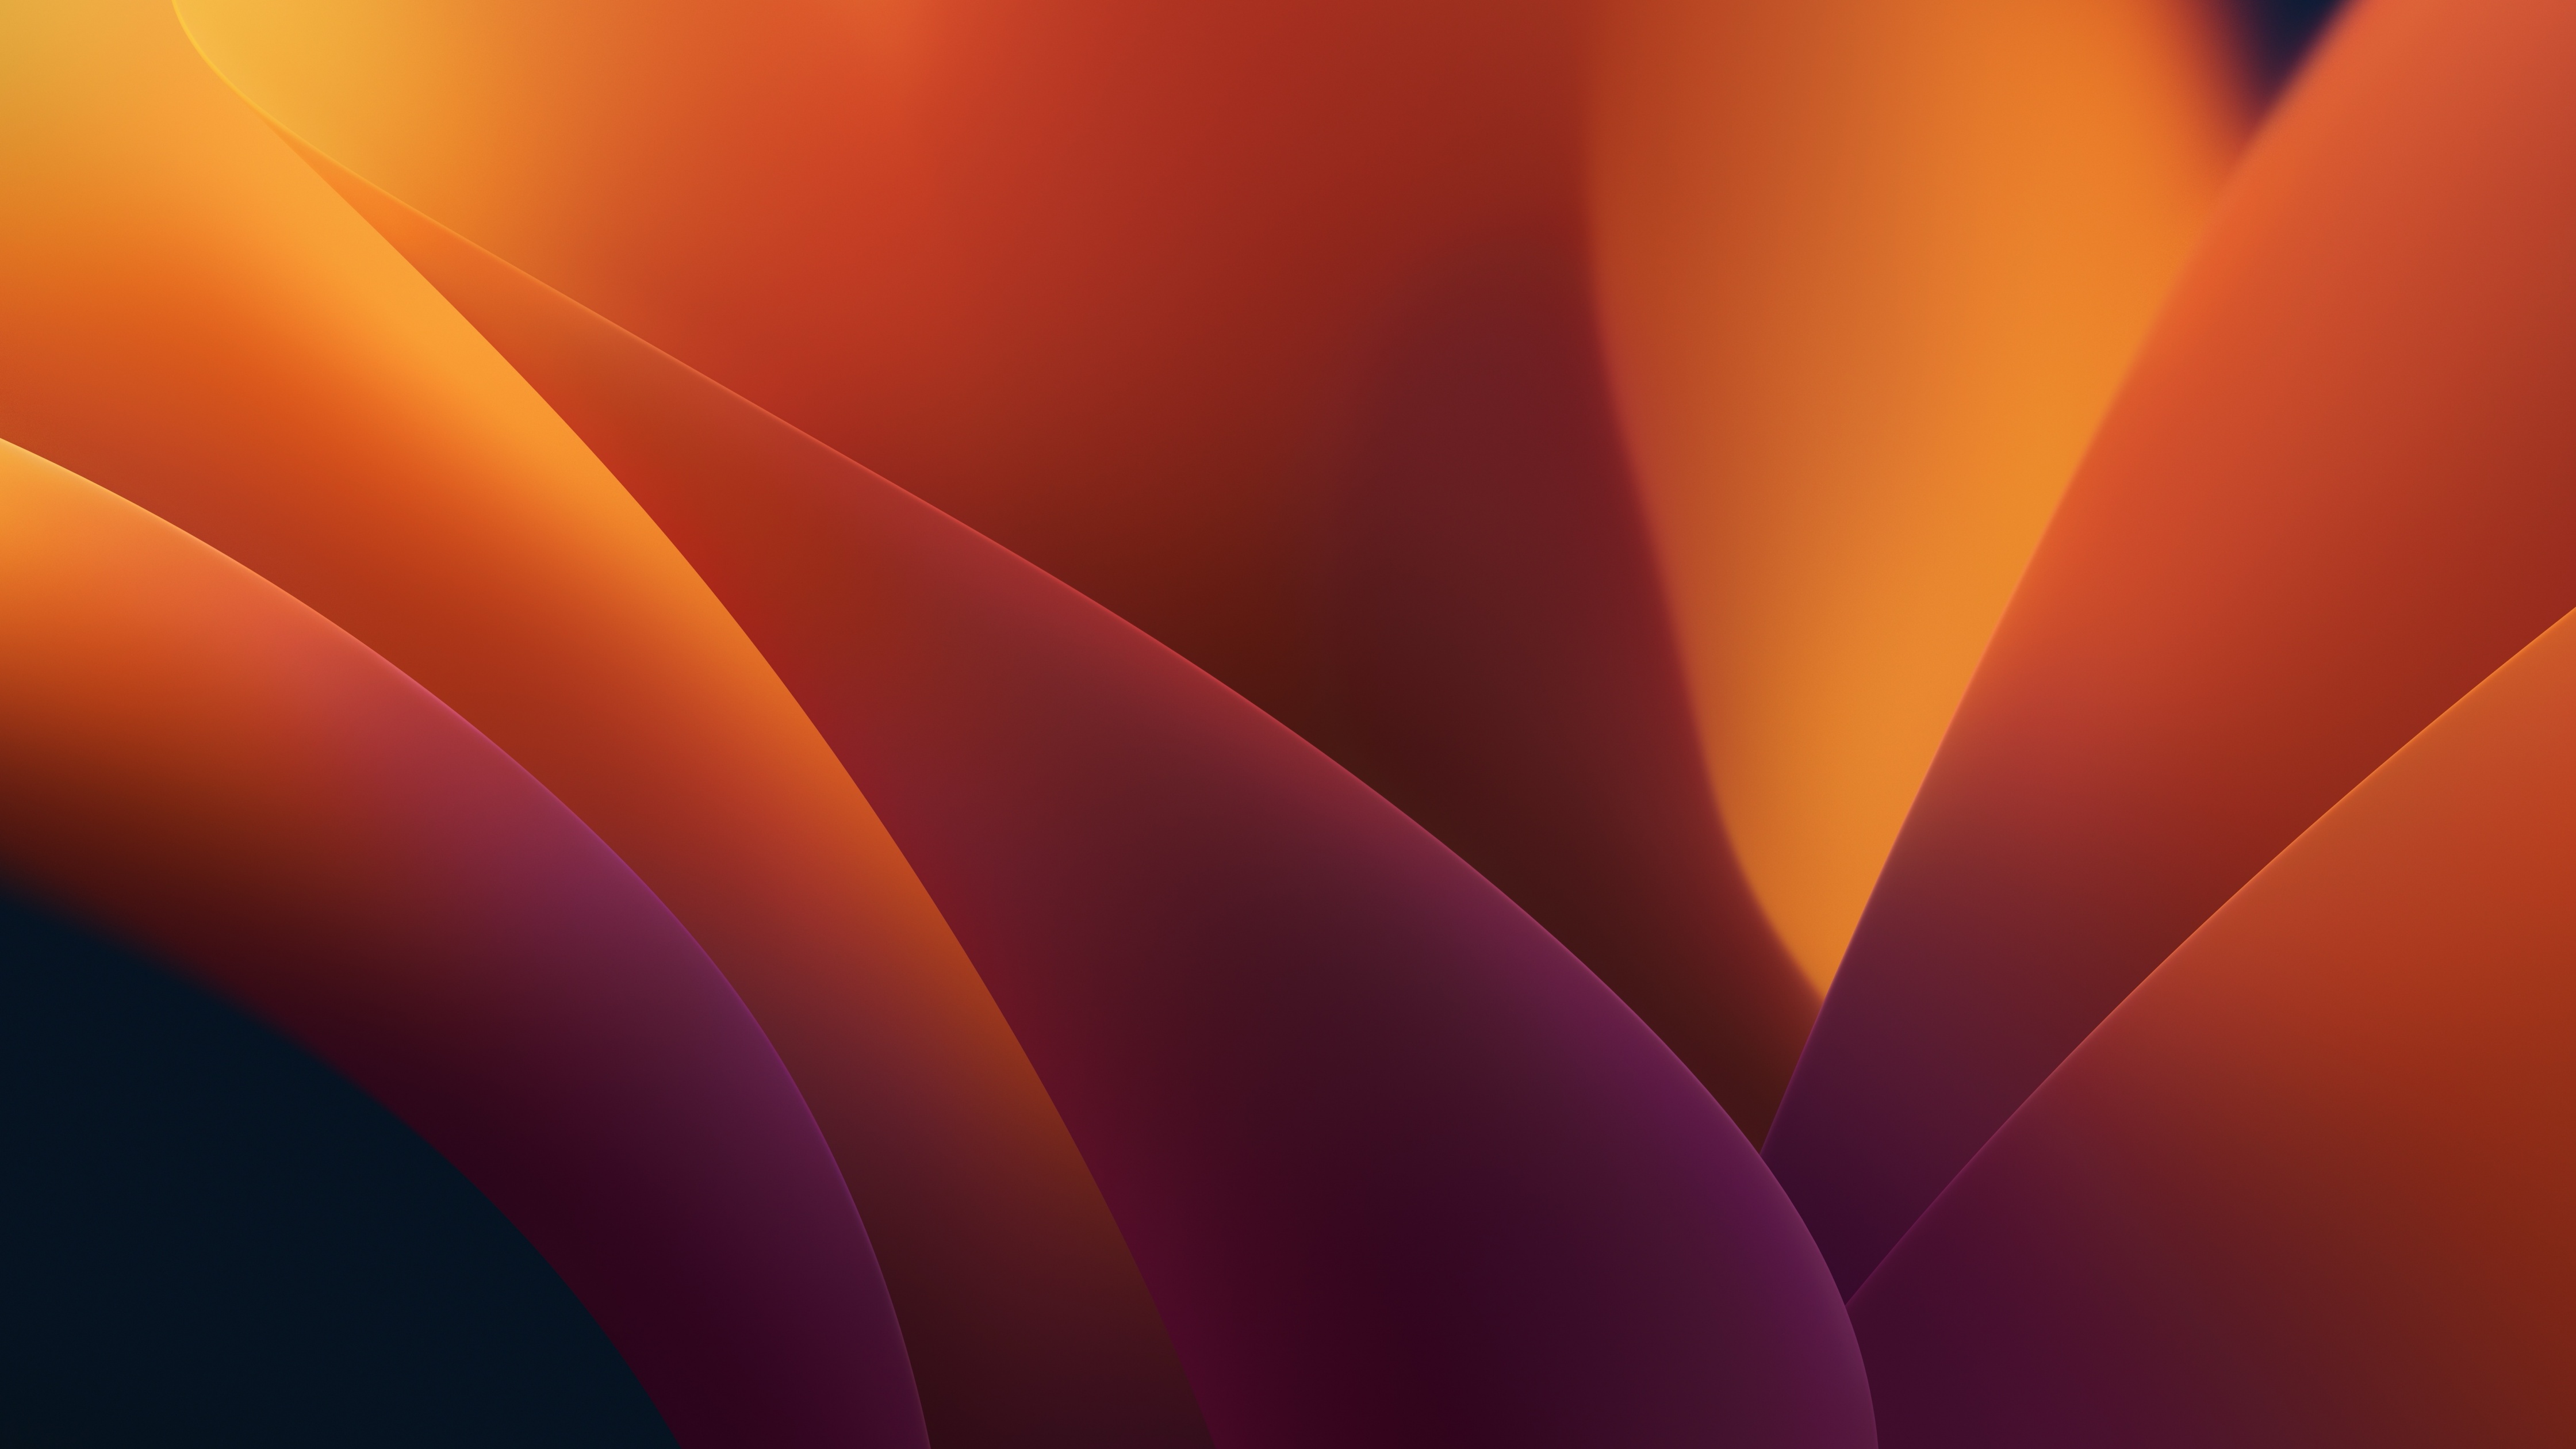 Hãy tận hưởng đẹp từng chi tiết với hình nền macOS Ventura 4K. Những màu sắc chuyển động và chi tiết tinh tế sẽ làm bạn cảm thấy yêu ngay từ lần đầu chạm mắt. Giờ đây, bạn có thể đưa vẻ đẹp tuyệt vời này vào màn hình của mình.